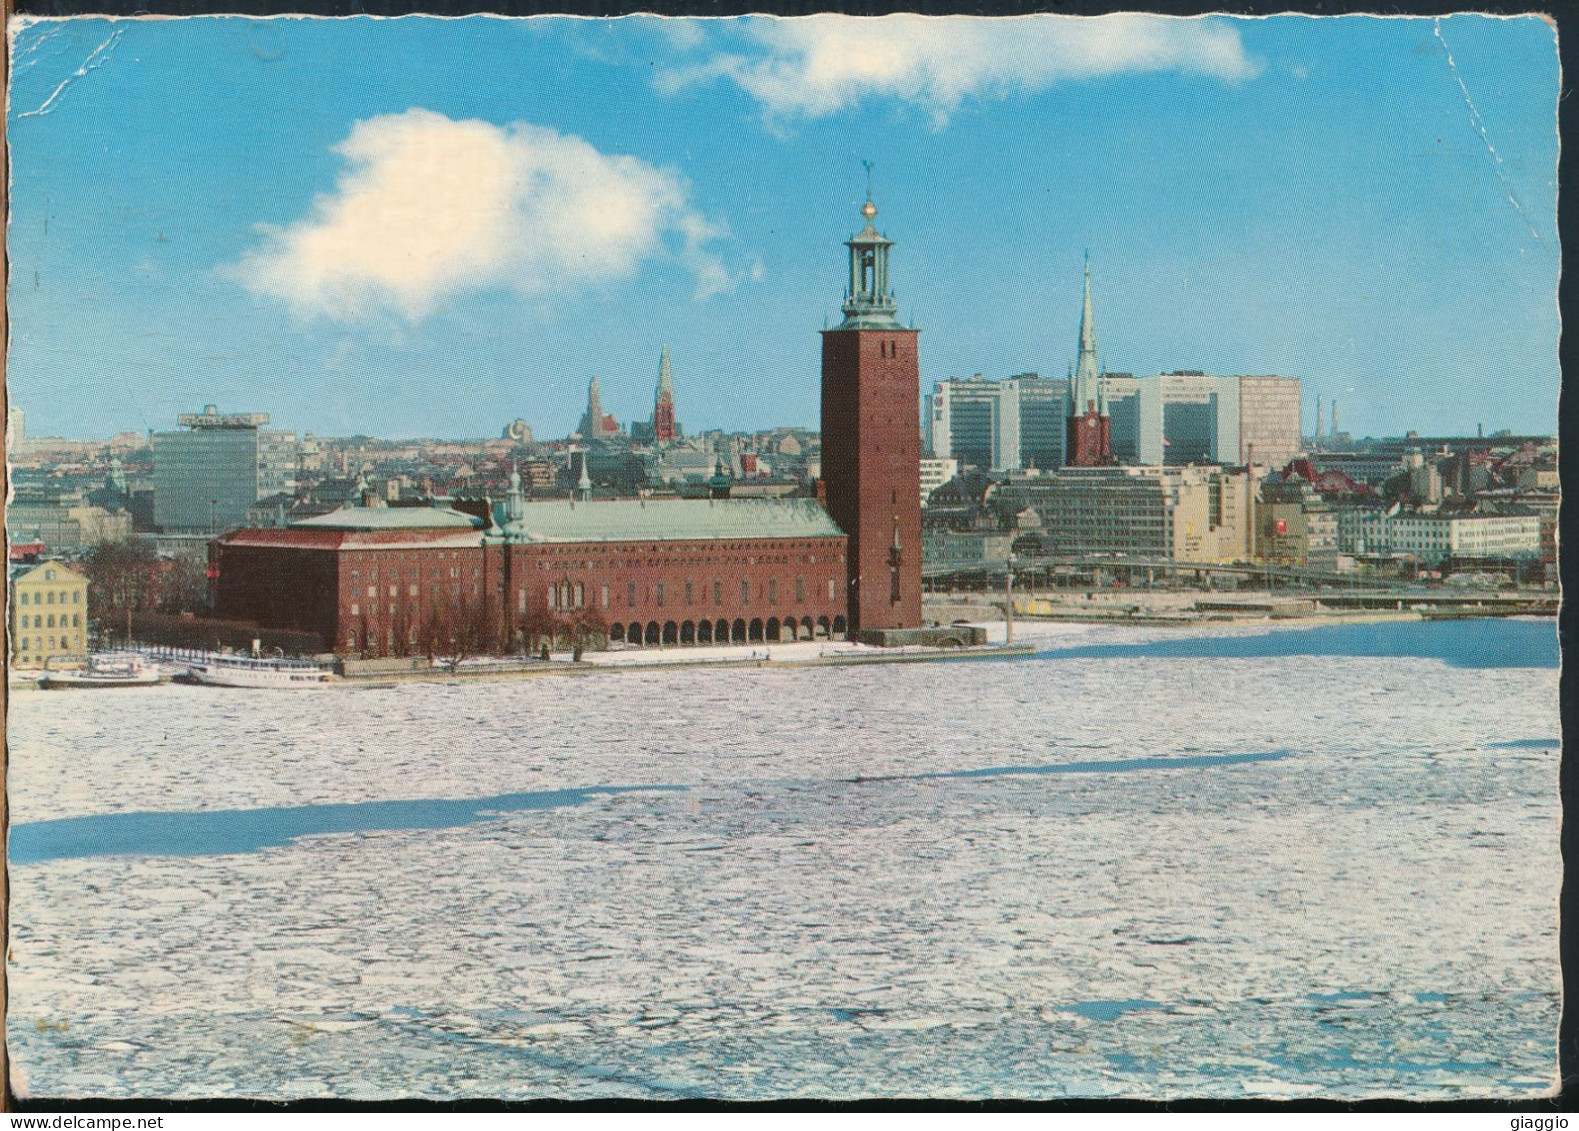 °°° 30904 - SWEDEN - STOCKHOLM - STADSHUSET CITY HALL - 1984 °°° - Sweden